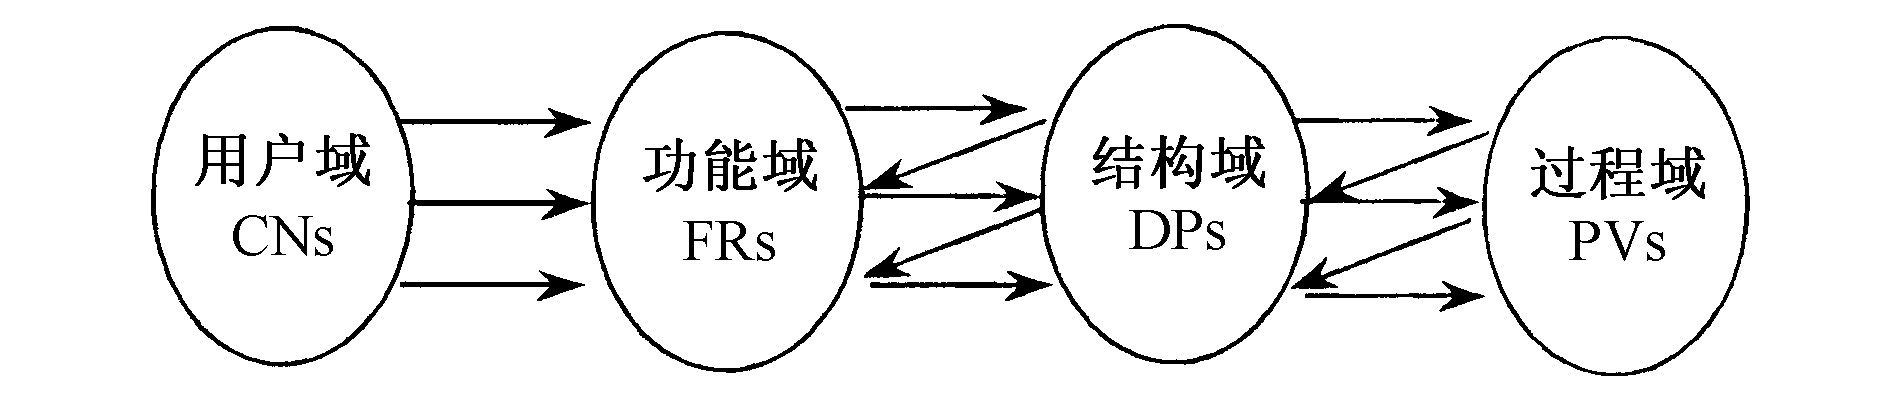 图1 域的结构及域间的关系